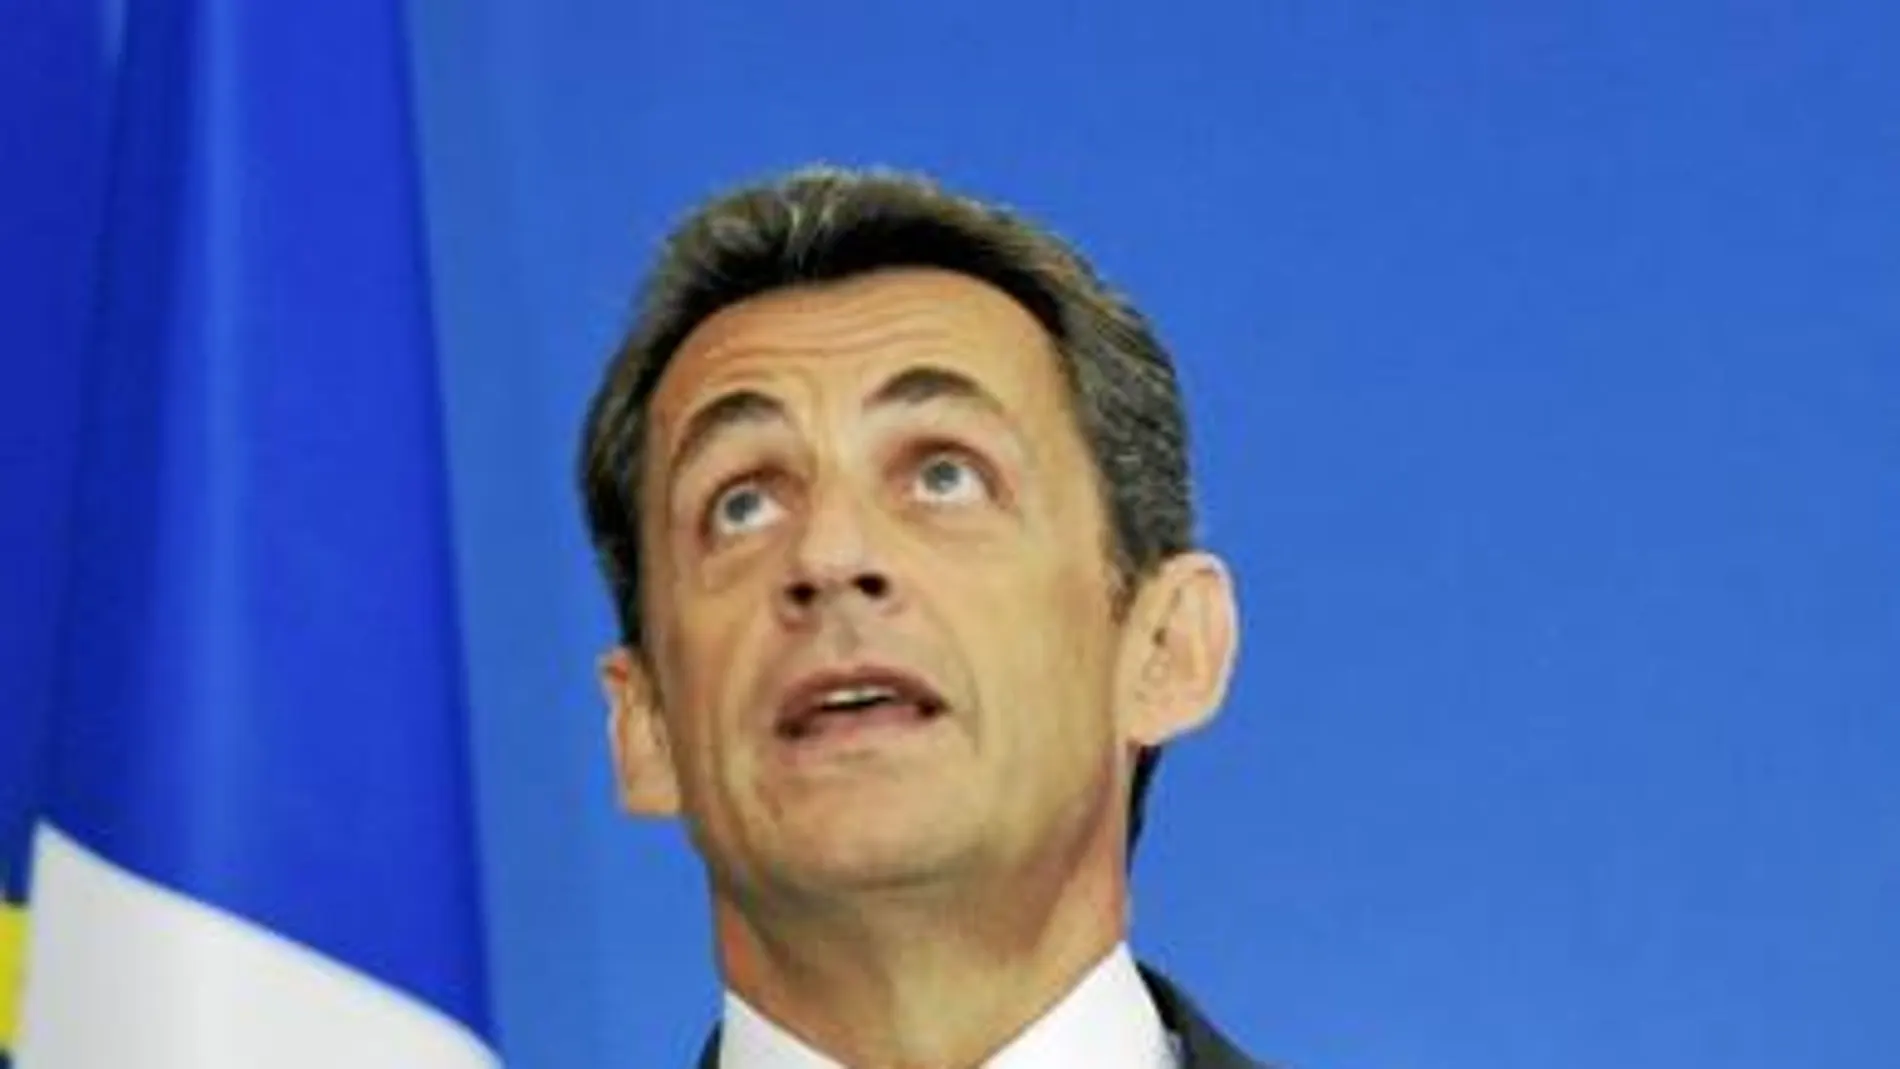 Al cumplirse su tercer aniversario en el Elíseo, Sarkozy se dispone a retrasar el ritmo de las reformas para recuperar la popularidad perdida